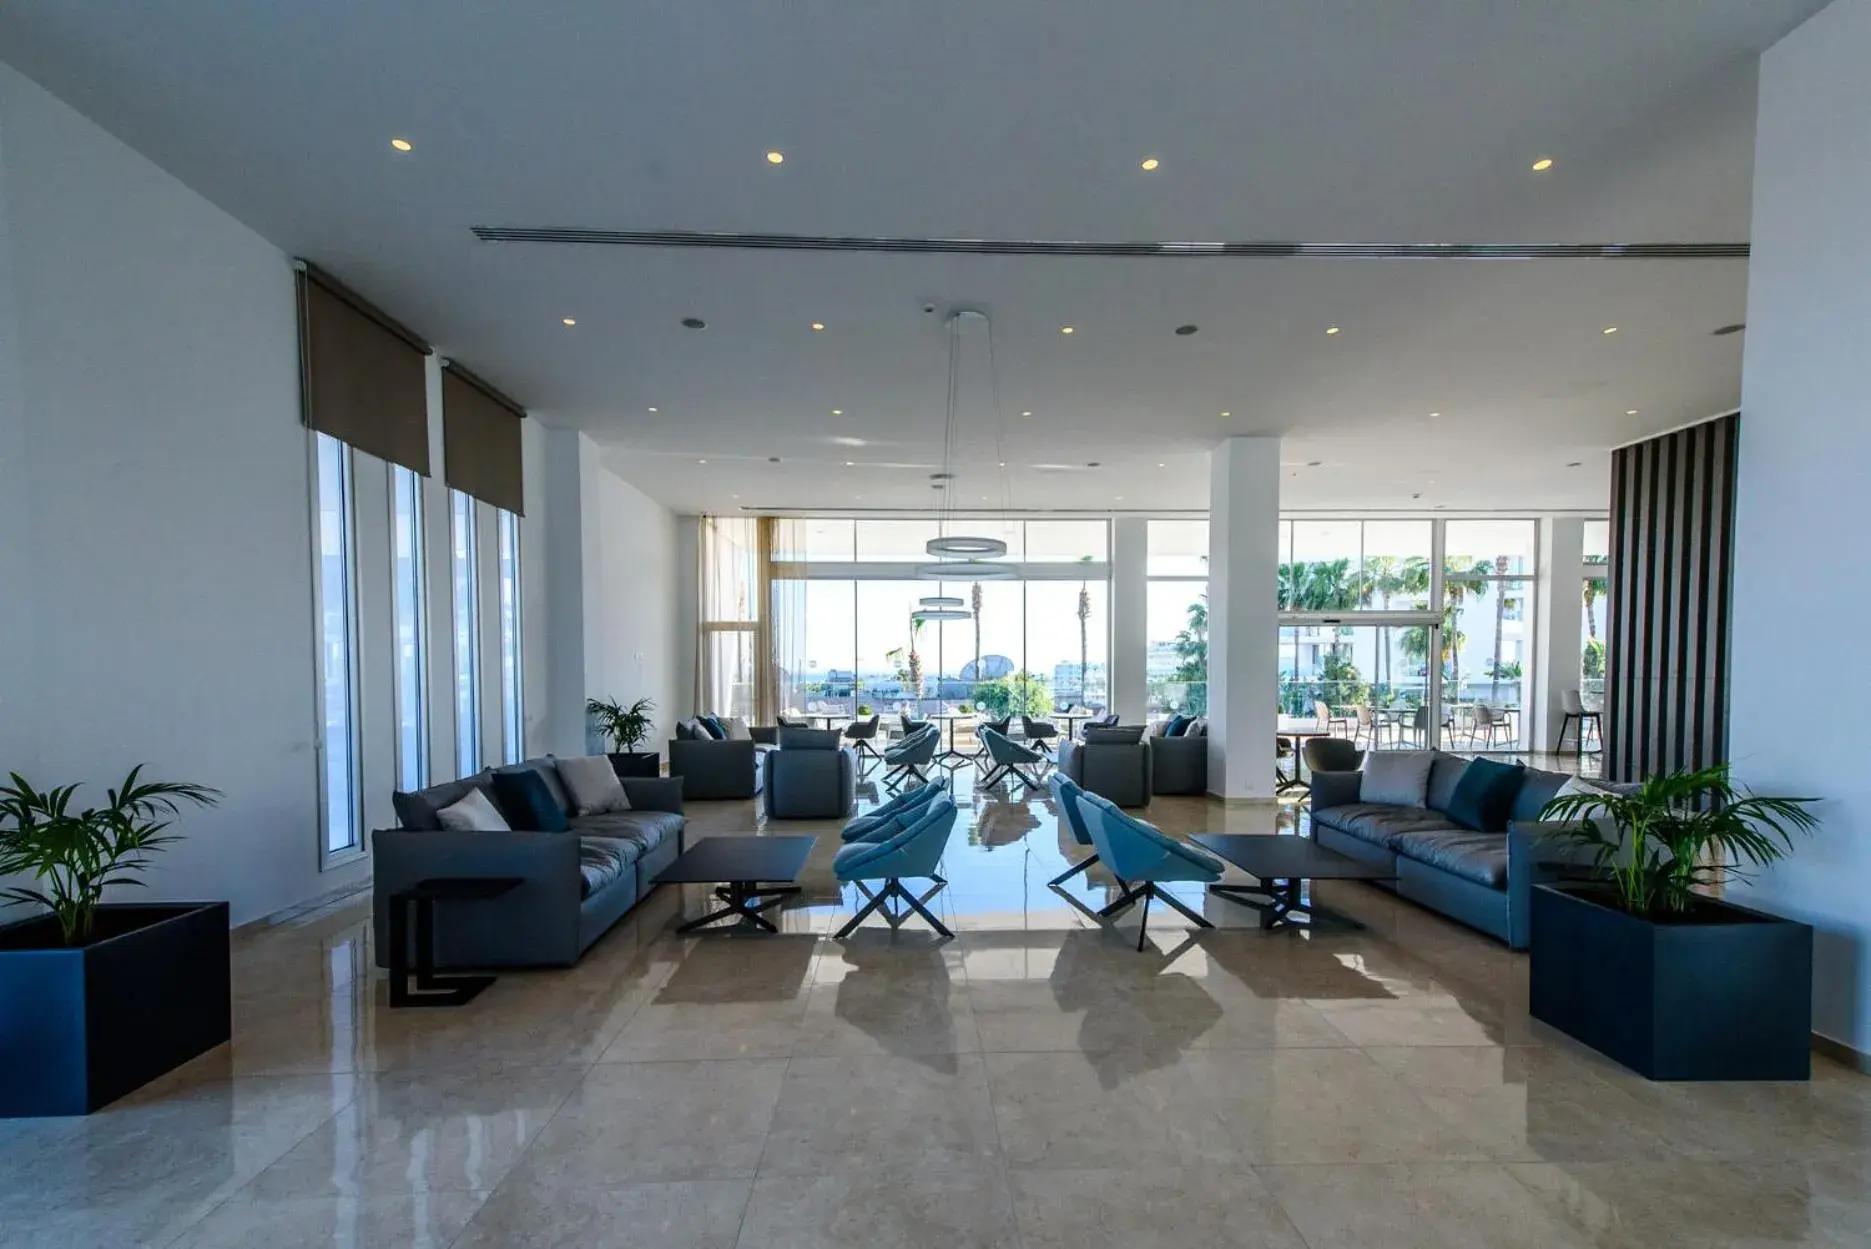 Lobby or reception in Eleana Hotel